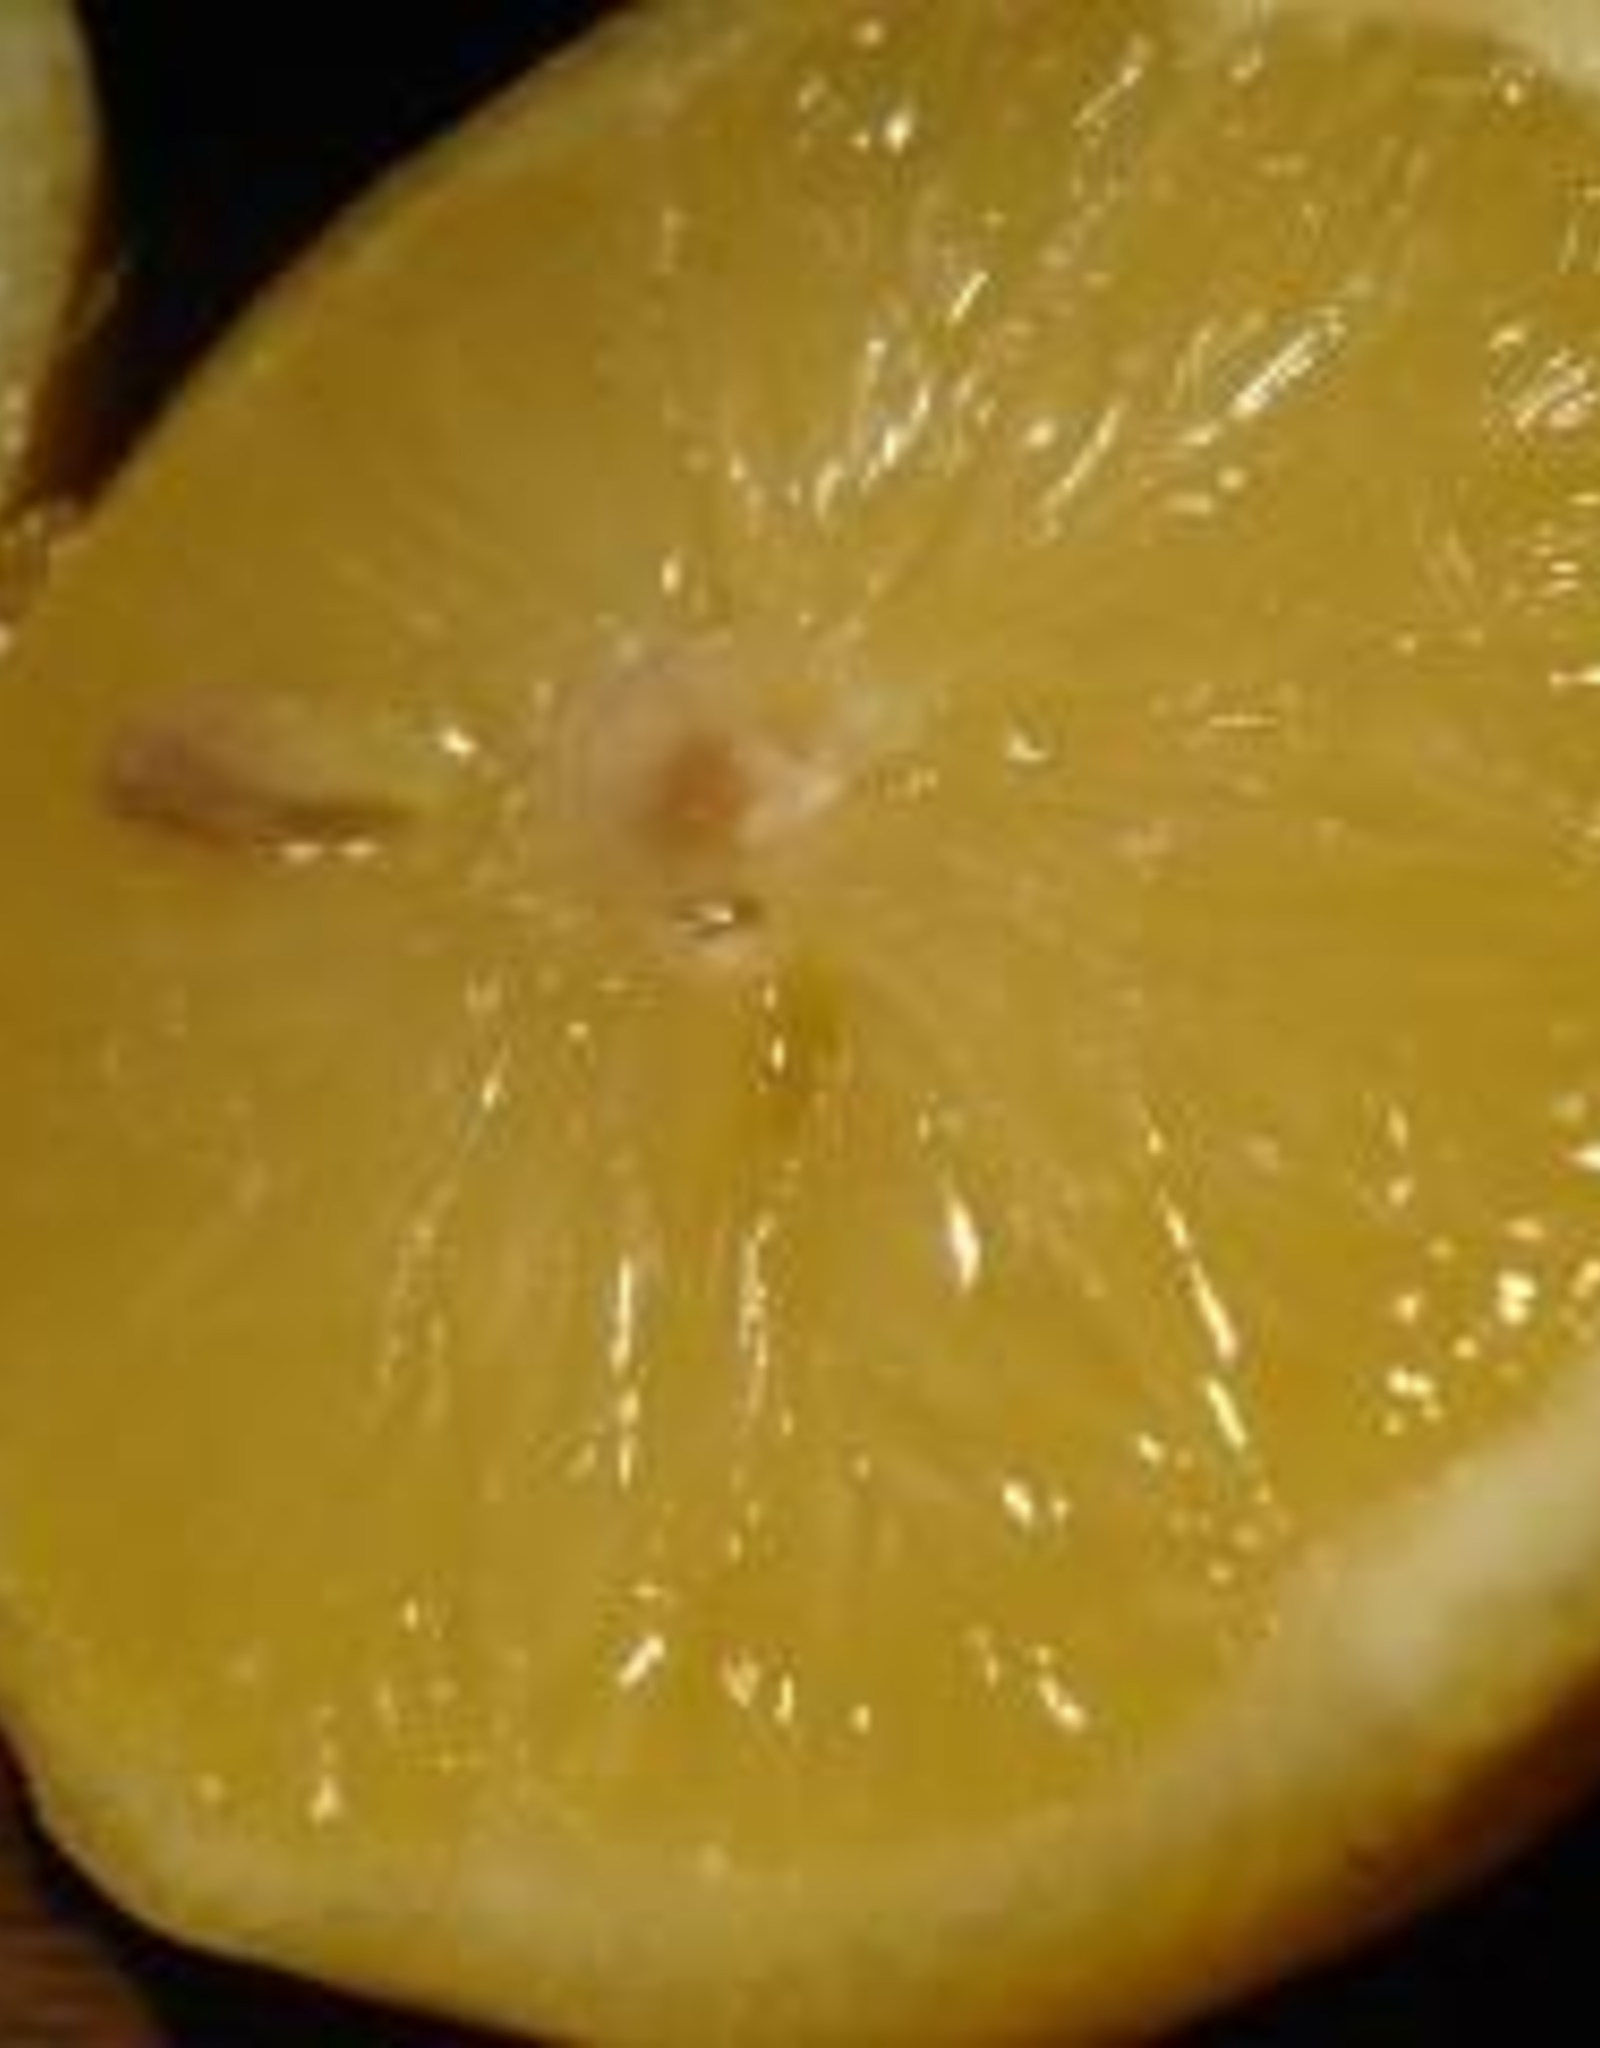 Sicilian Lemon White Balsamic